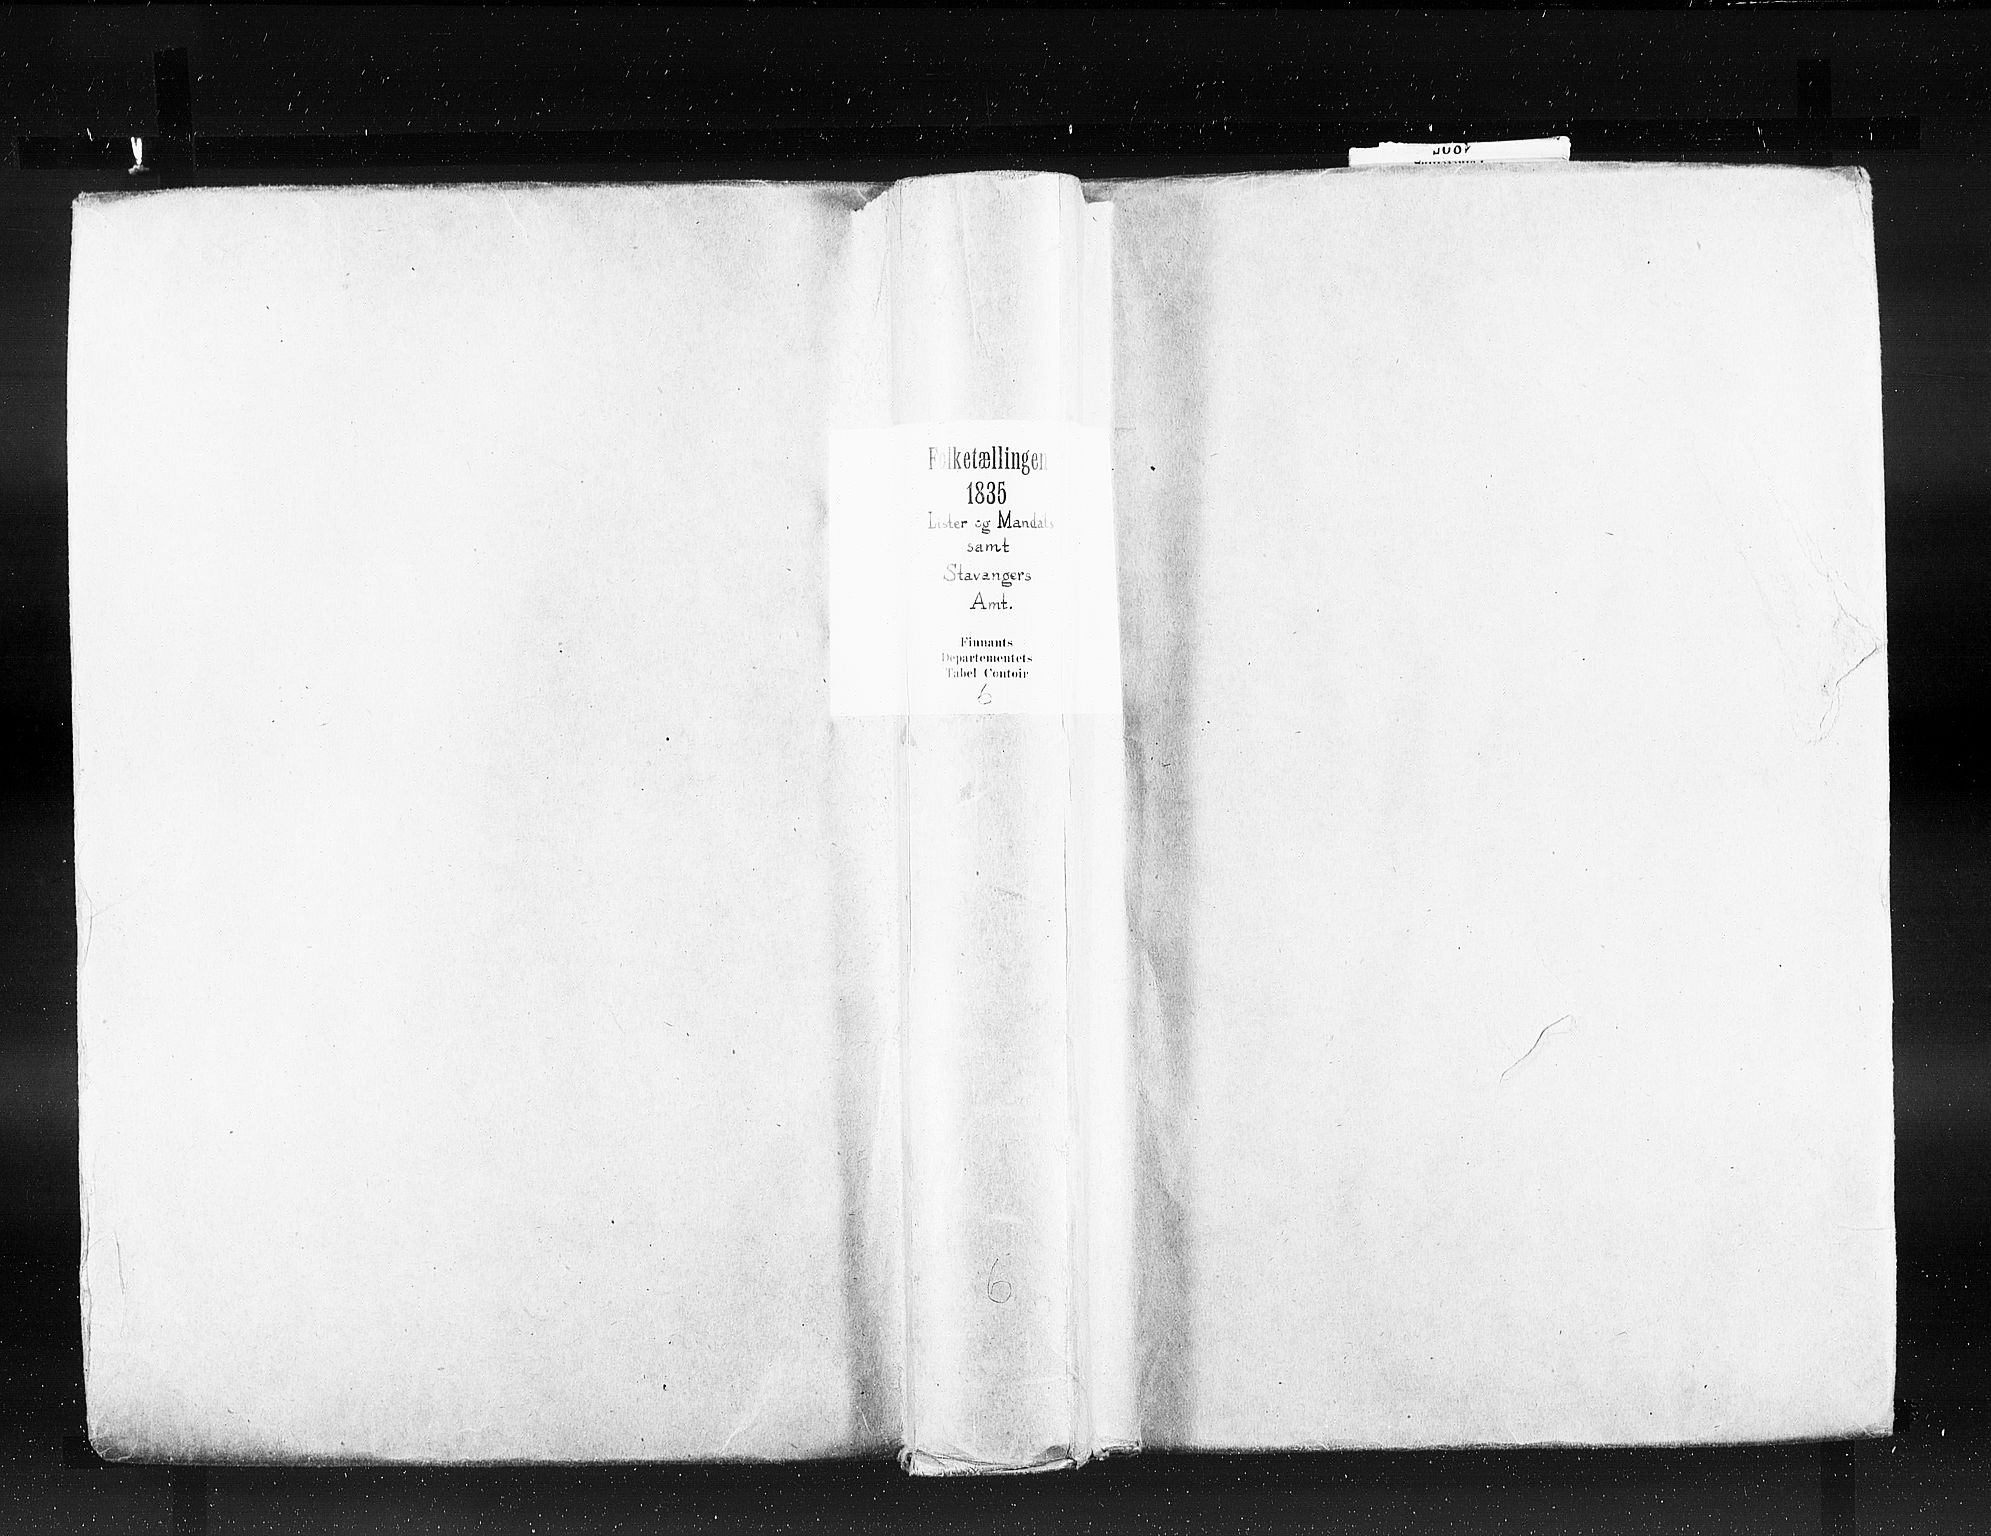 RA, Folketellingen 1835, bind 6: Lister og Mandal amt og Stavanger amt, 1835